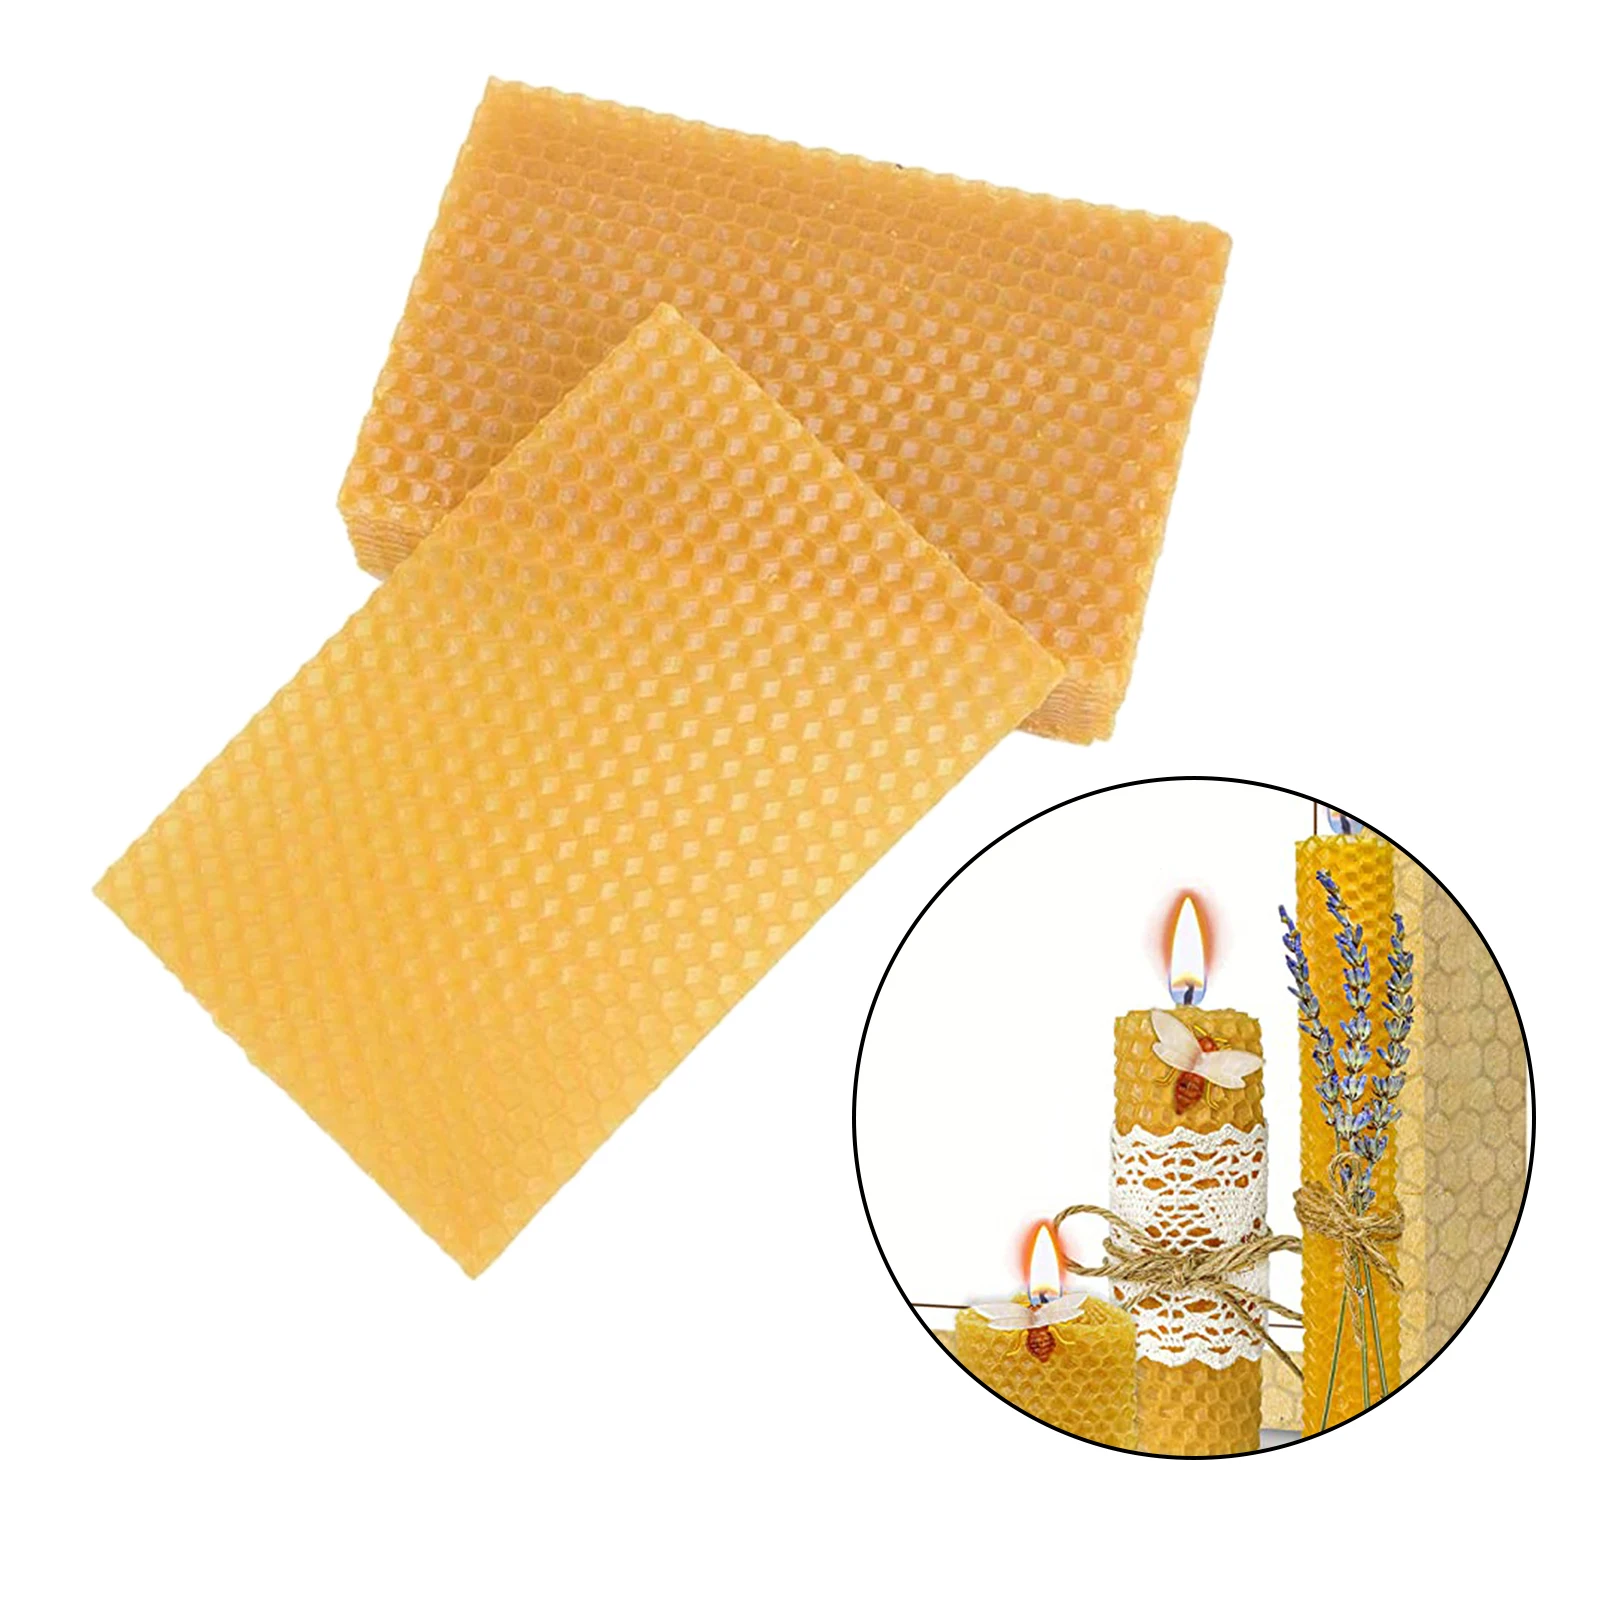 

10Pcs Beeswax Sheets Candle Making Craft DIY Kits, Honey Candles Maker Full Bees Wax Honeycomb, Beekeeping Foundation Sheets